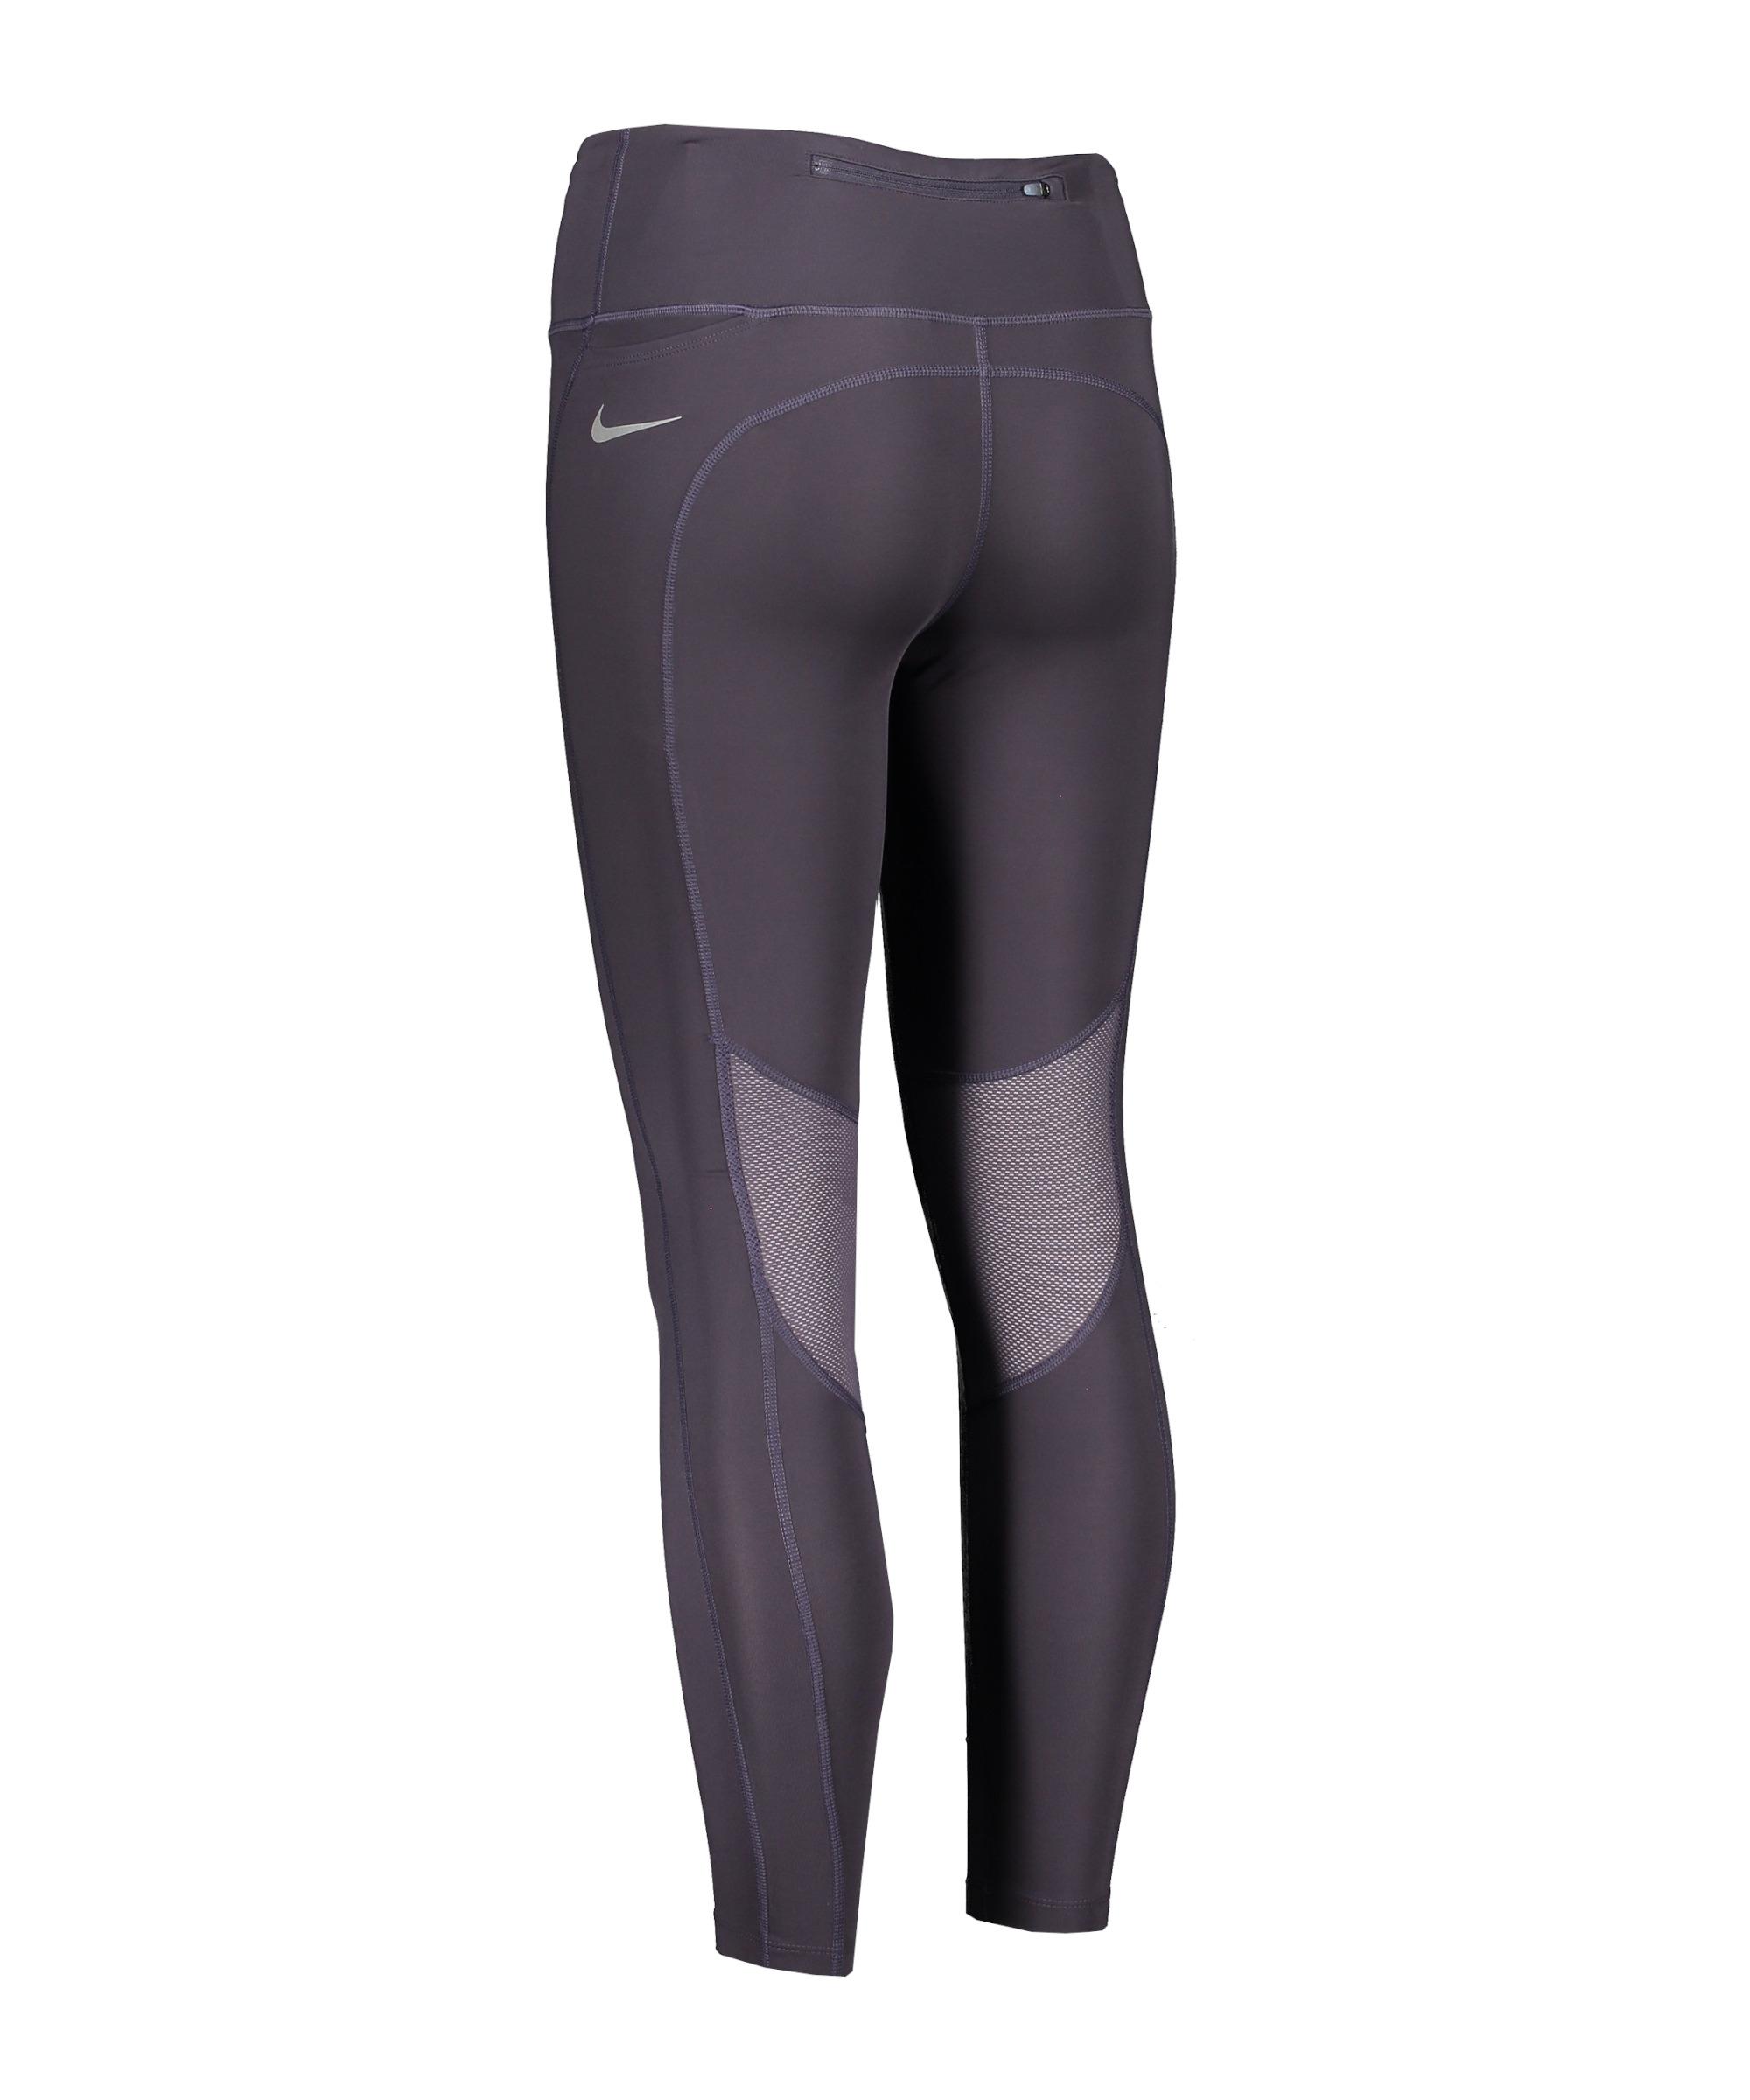 Epic Damen SportScheck Online Laufhose von Fast Nike Shop Damen lila im kaufen Leggings